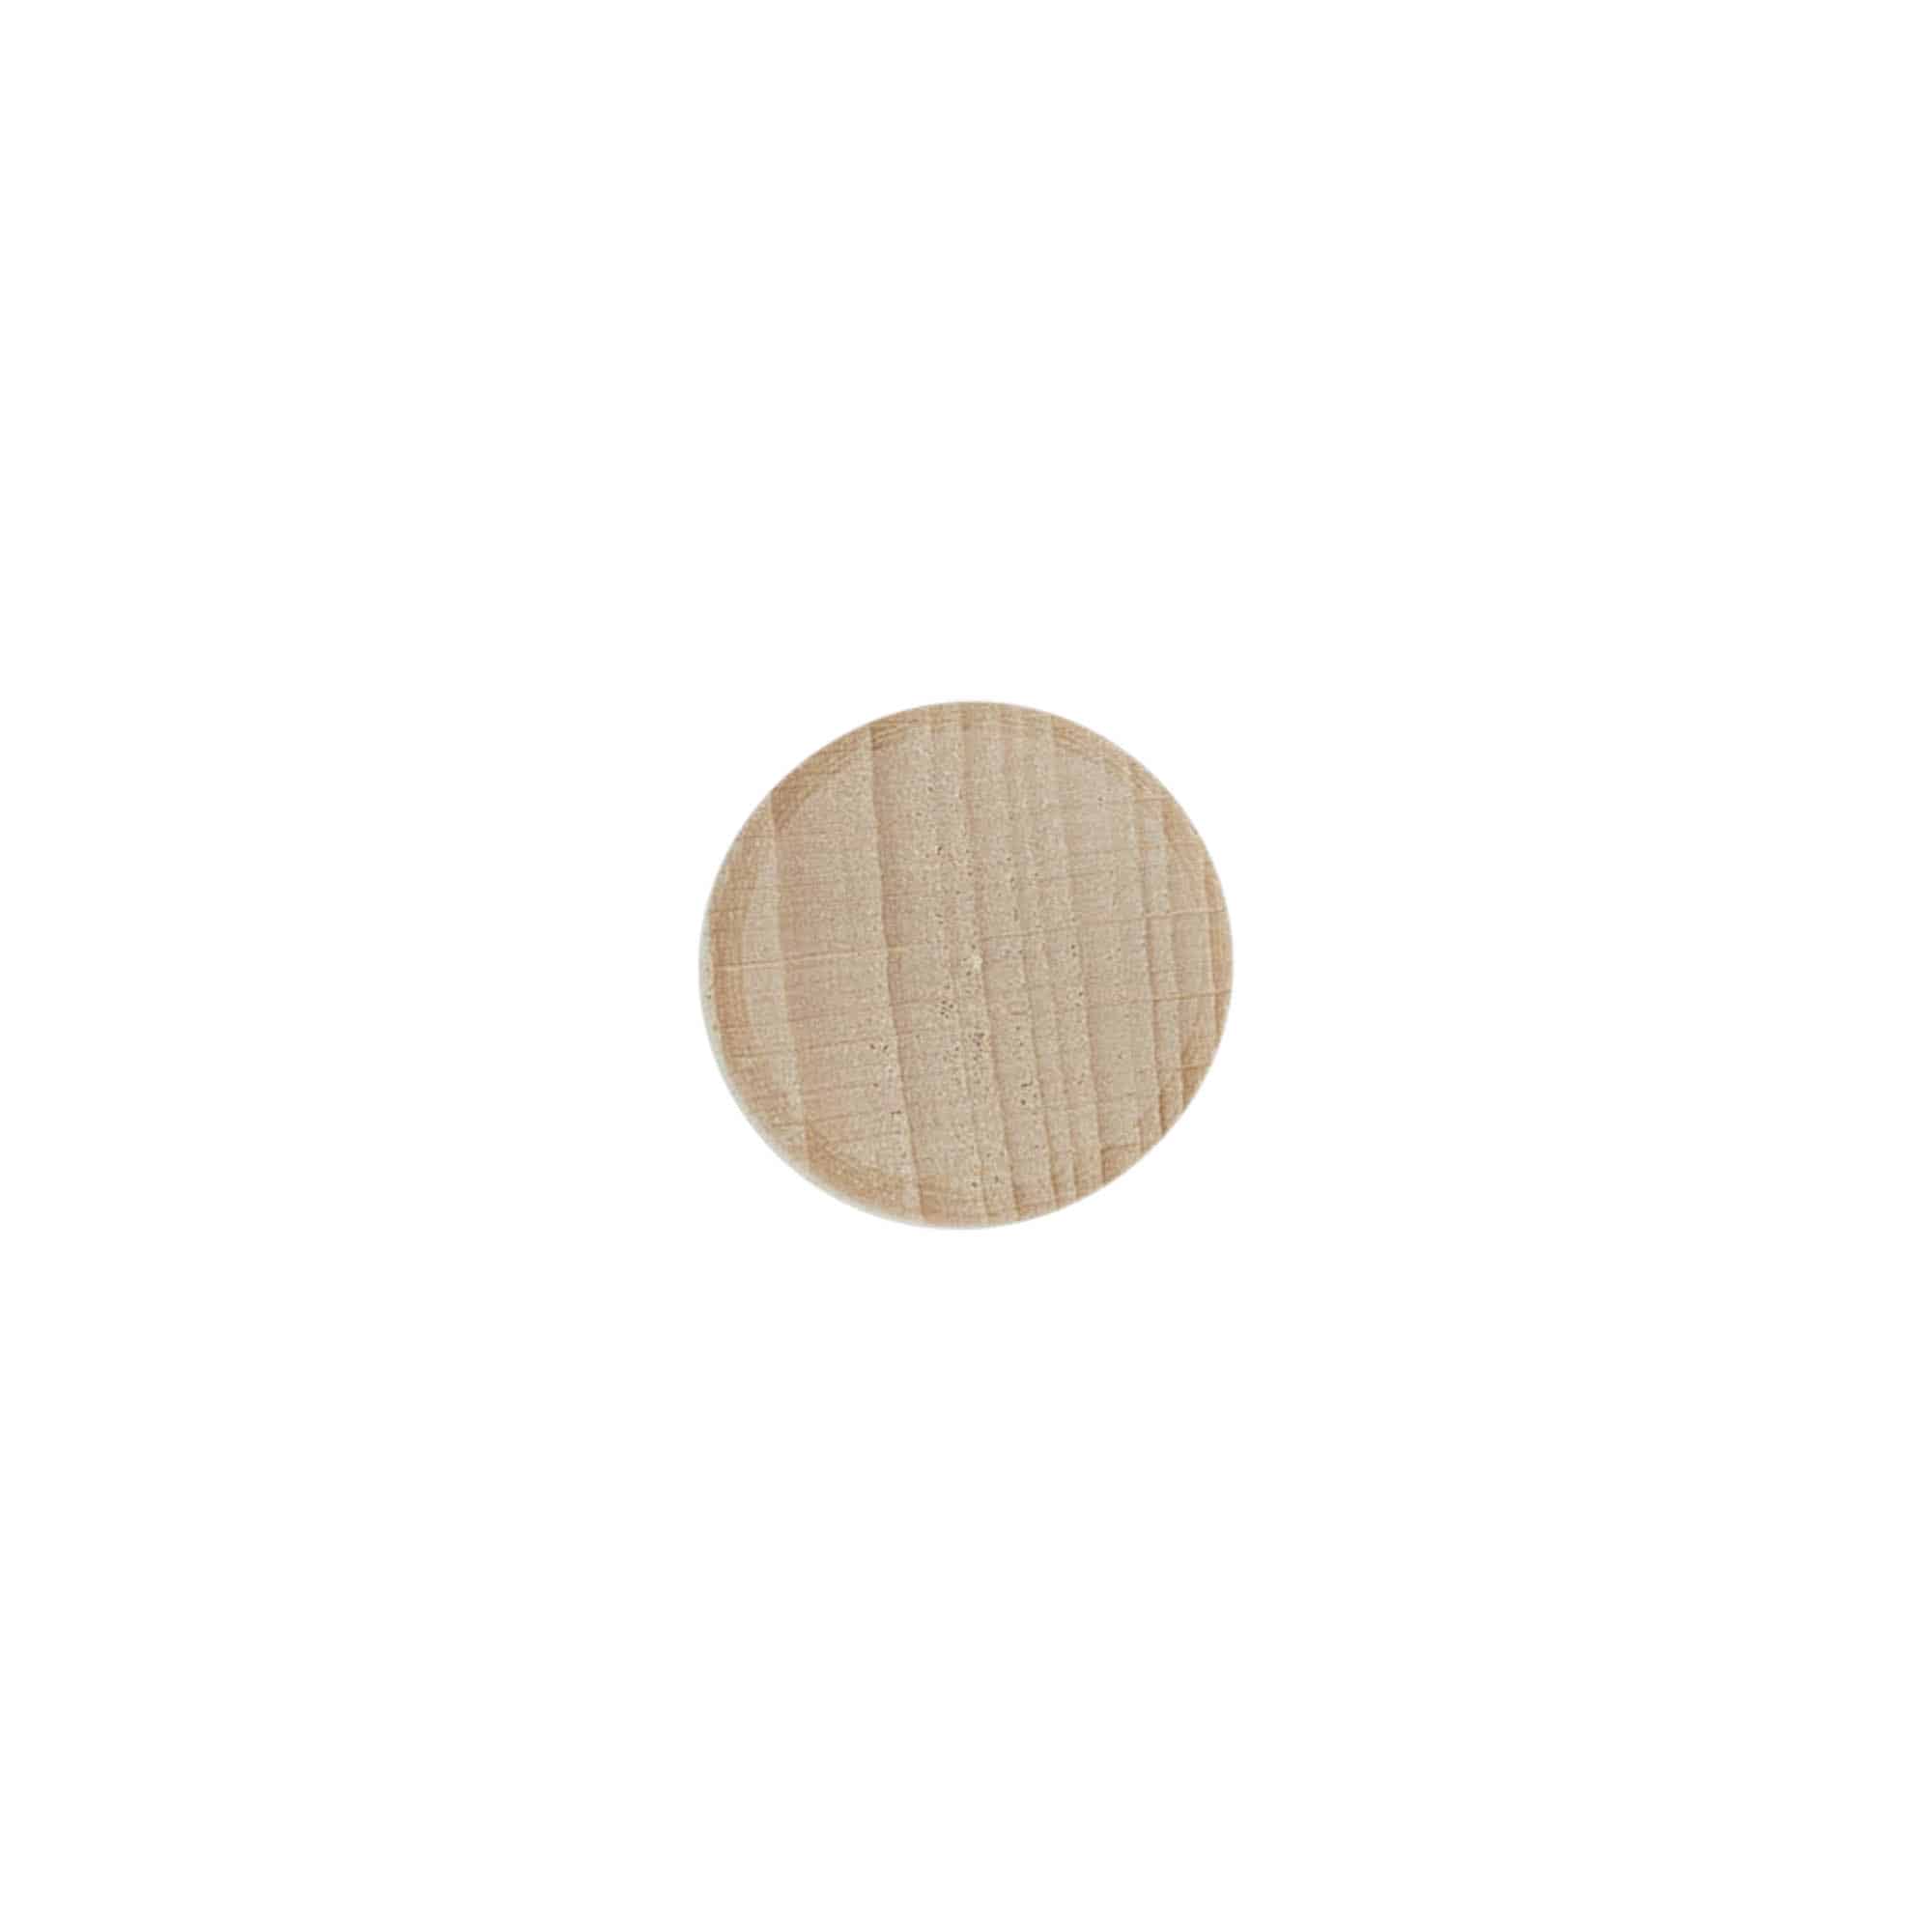 Korek s úchytem 16 mm, plast-dřevo, barevný, pro uzávěr: korek